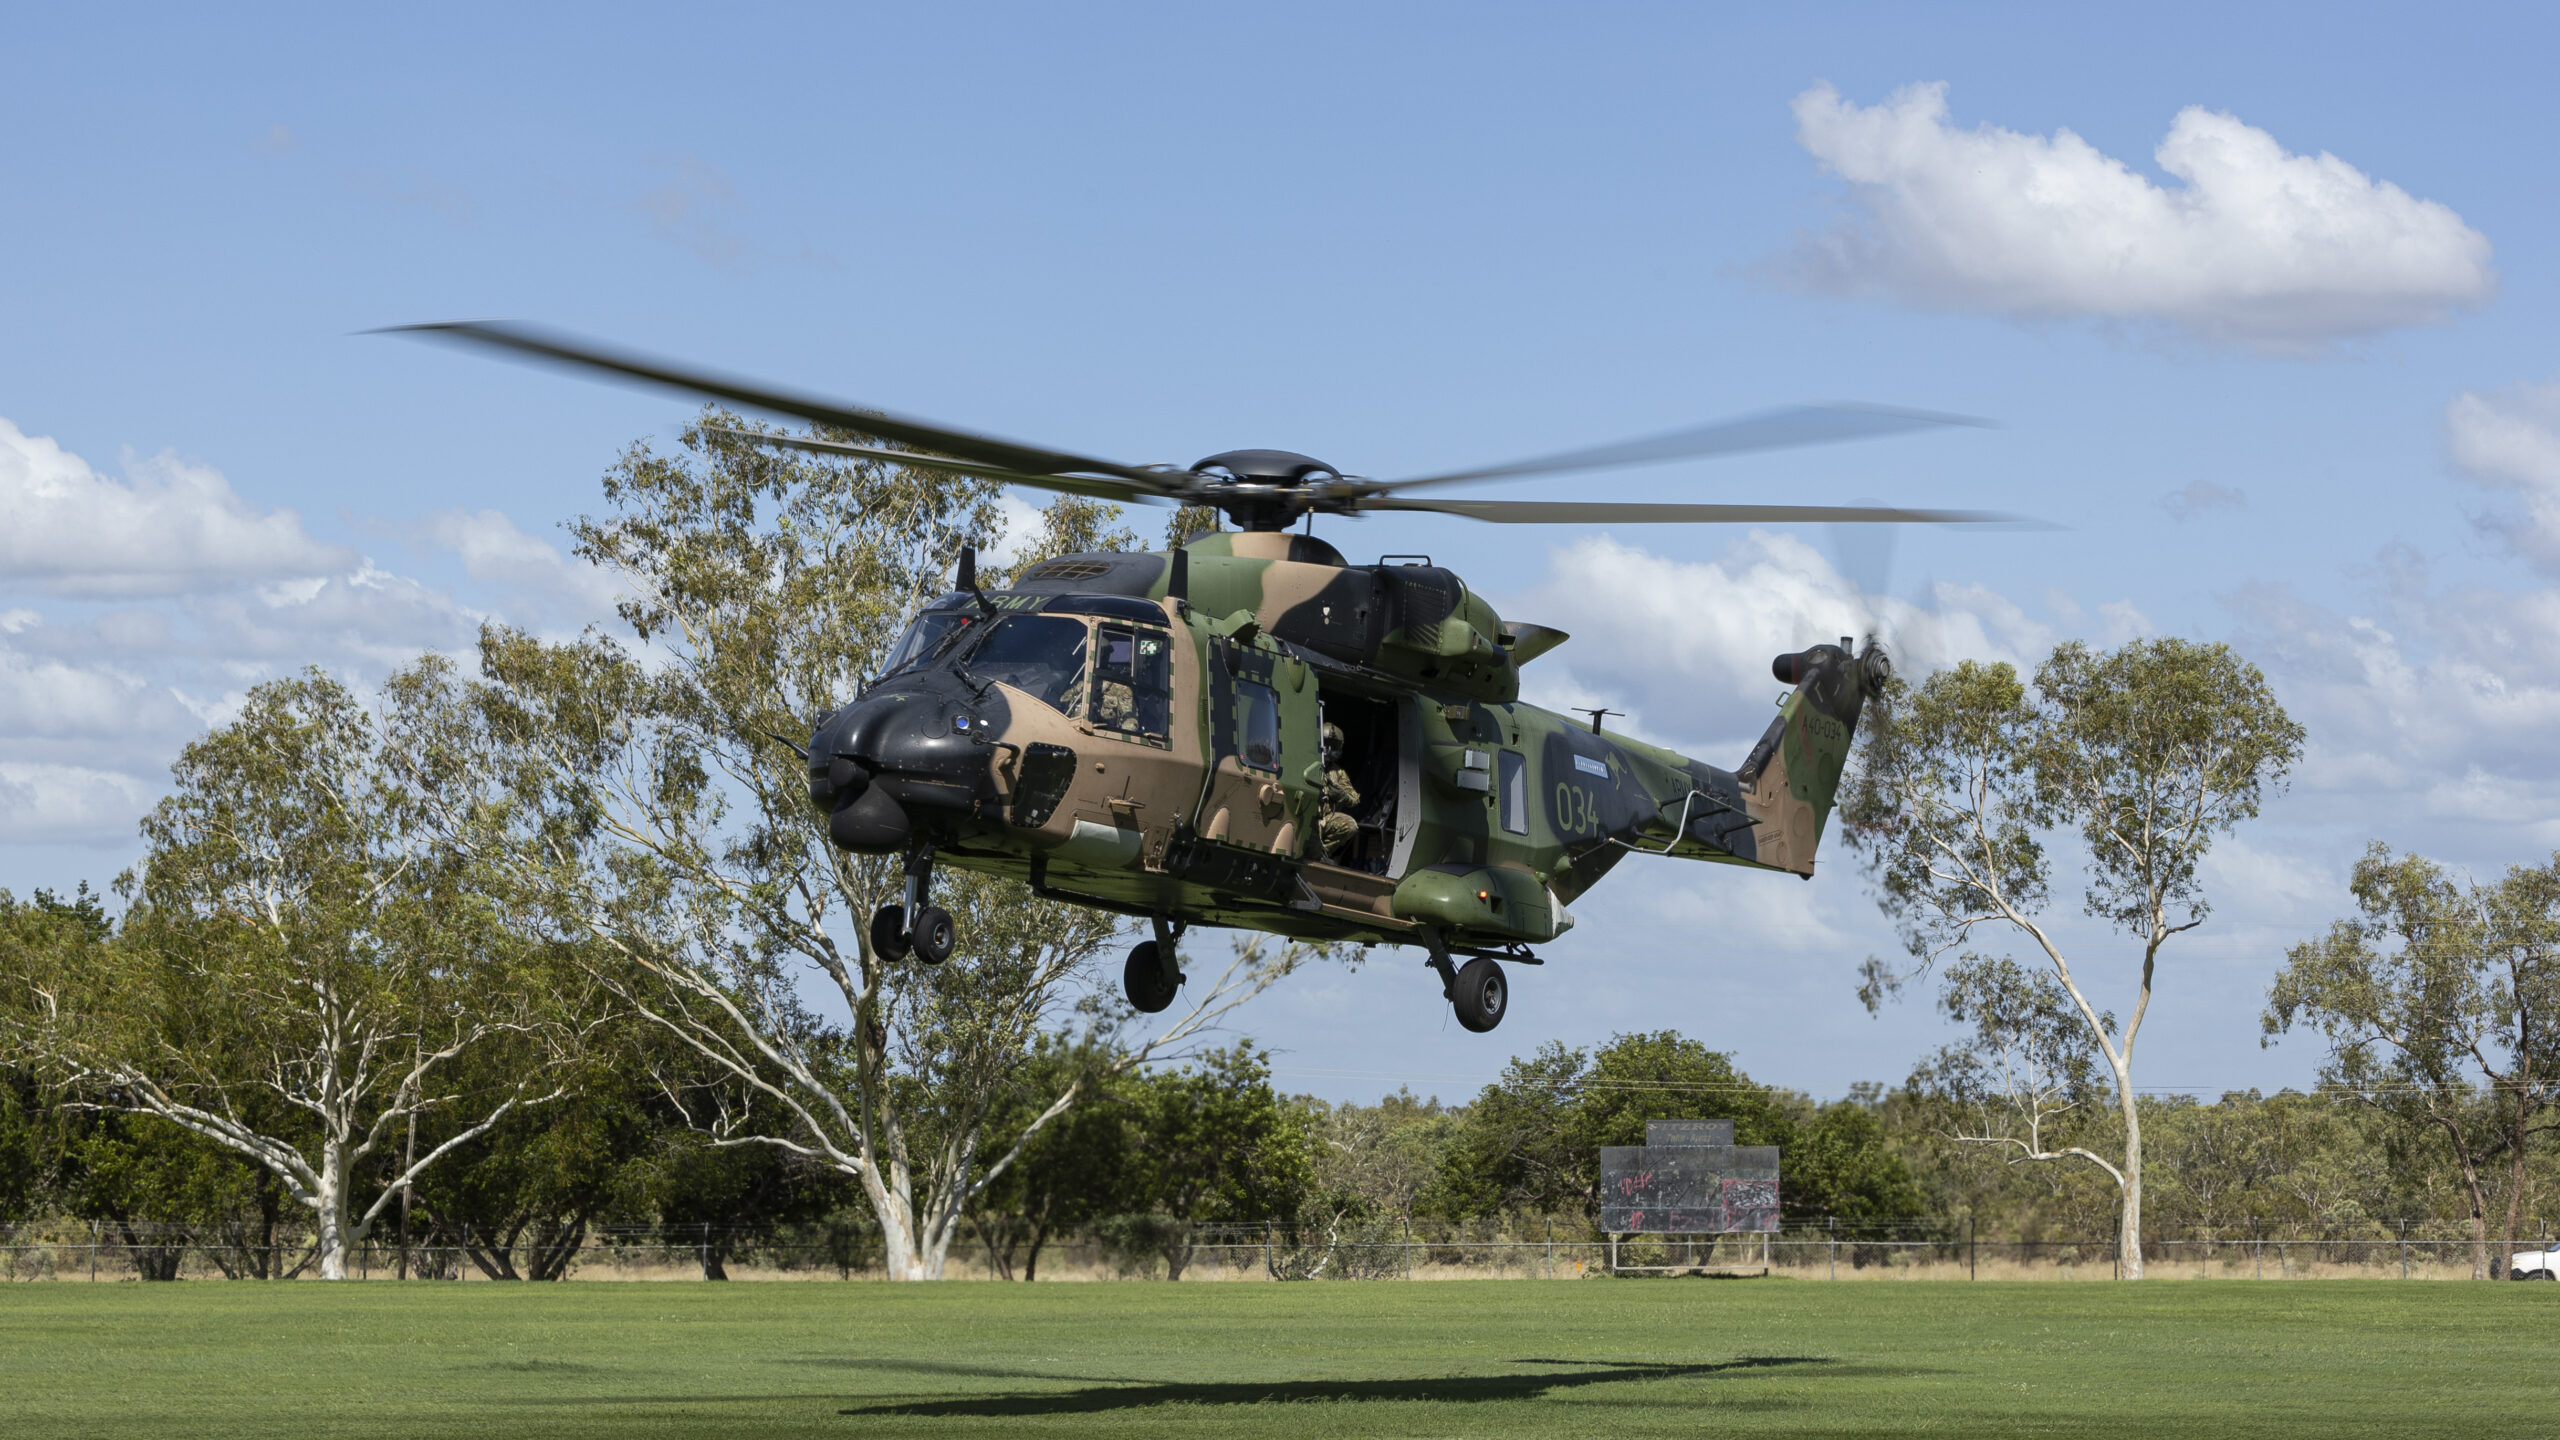 機体の残骸発見も乗員4人は依然行方不明 オーストラリア陸軍ヘリ墜落